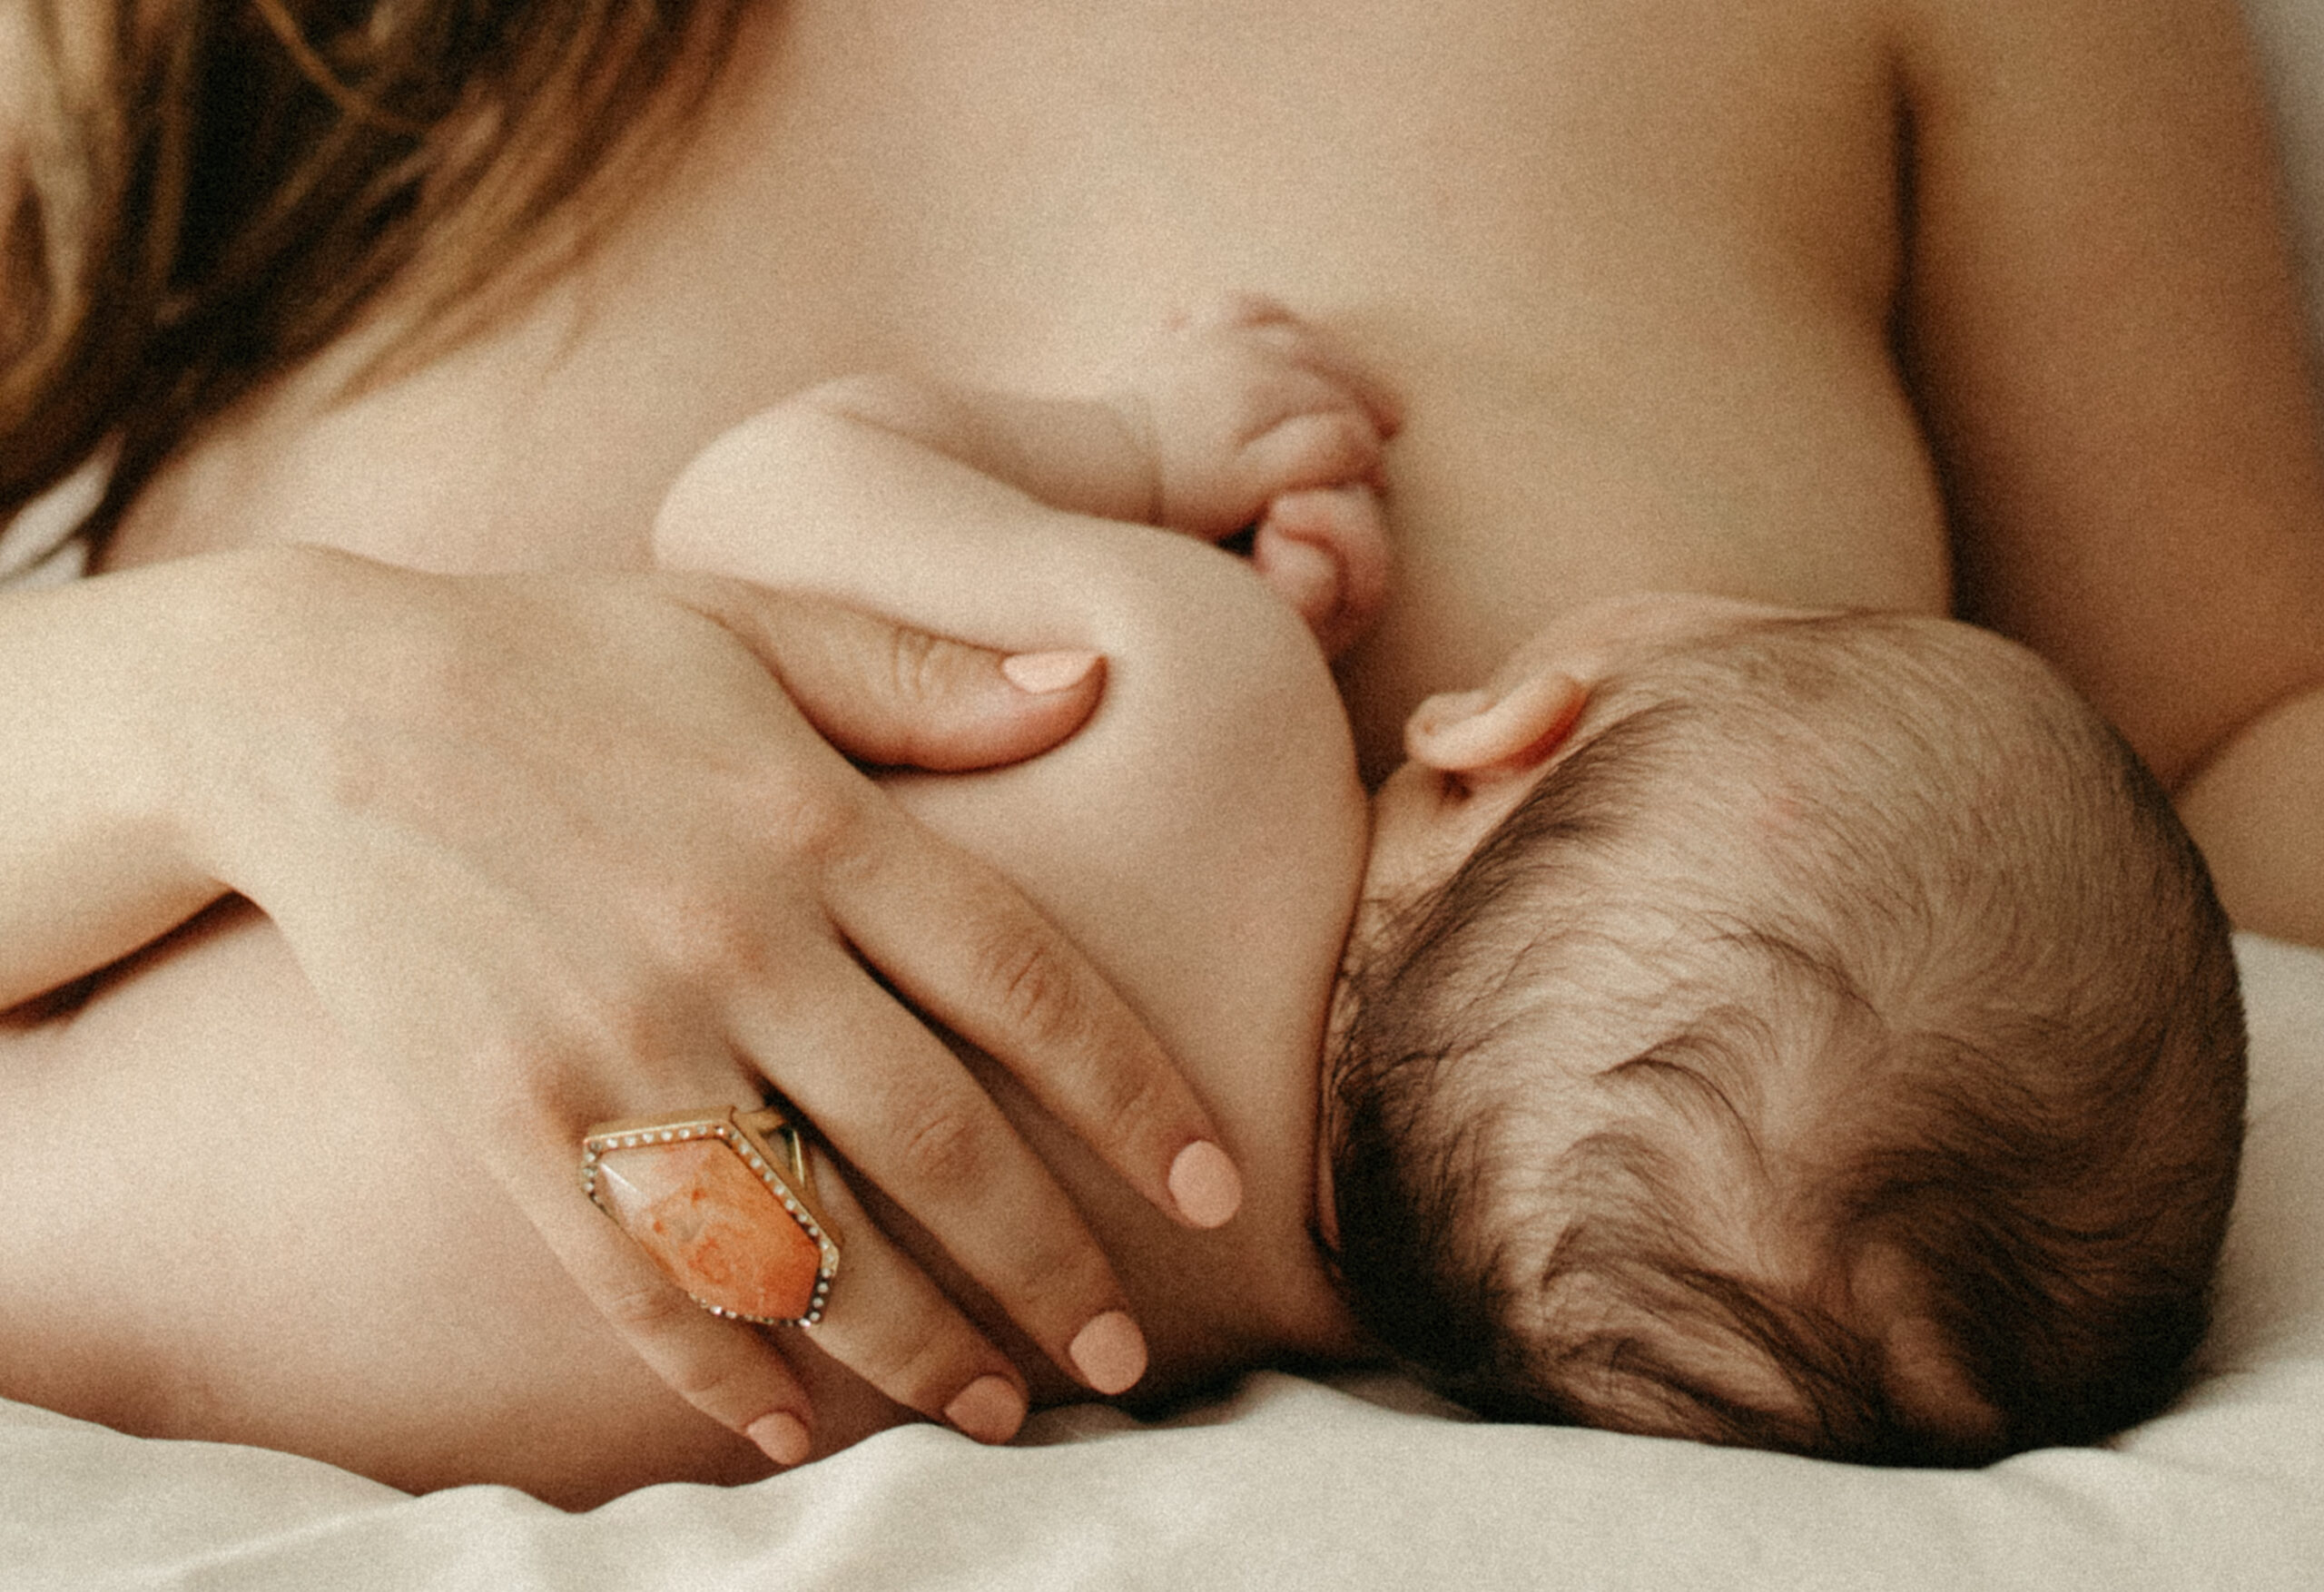 Mother breastfeeds her child in Cincinnati, Ohio